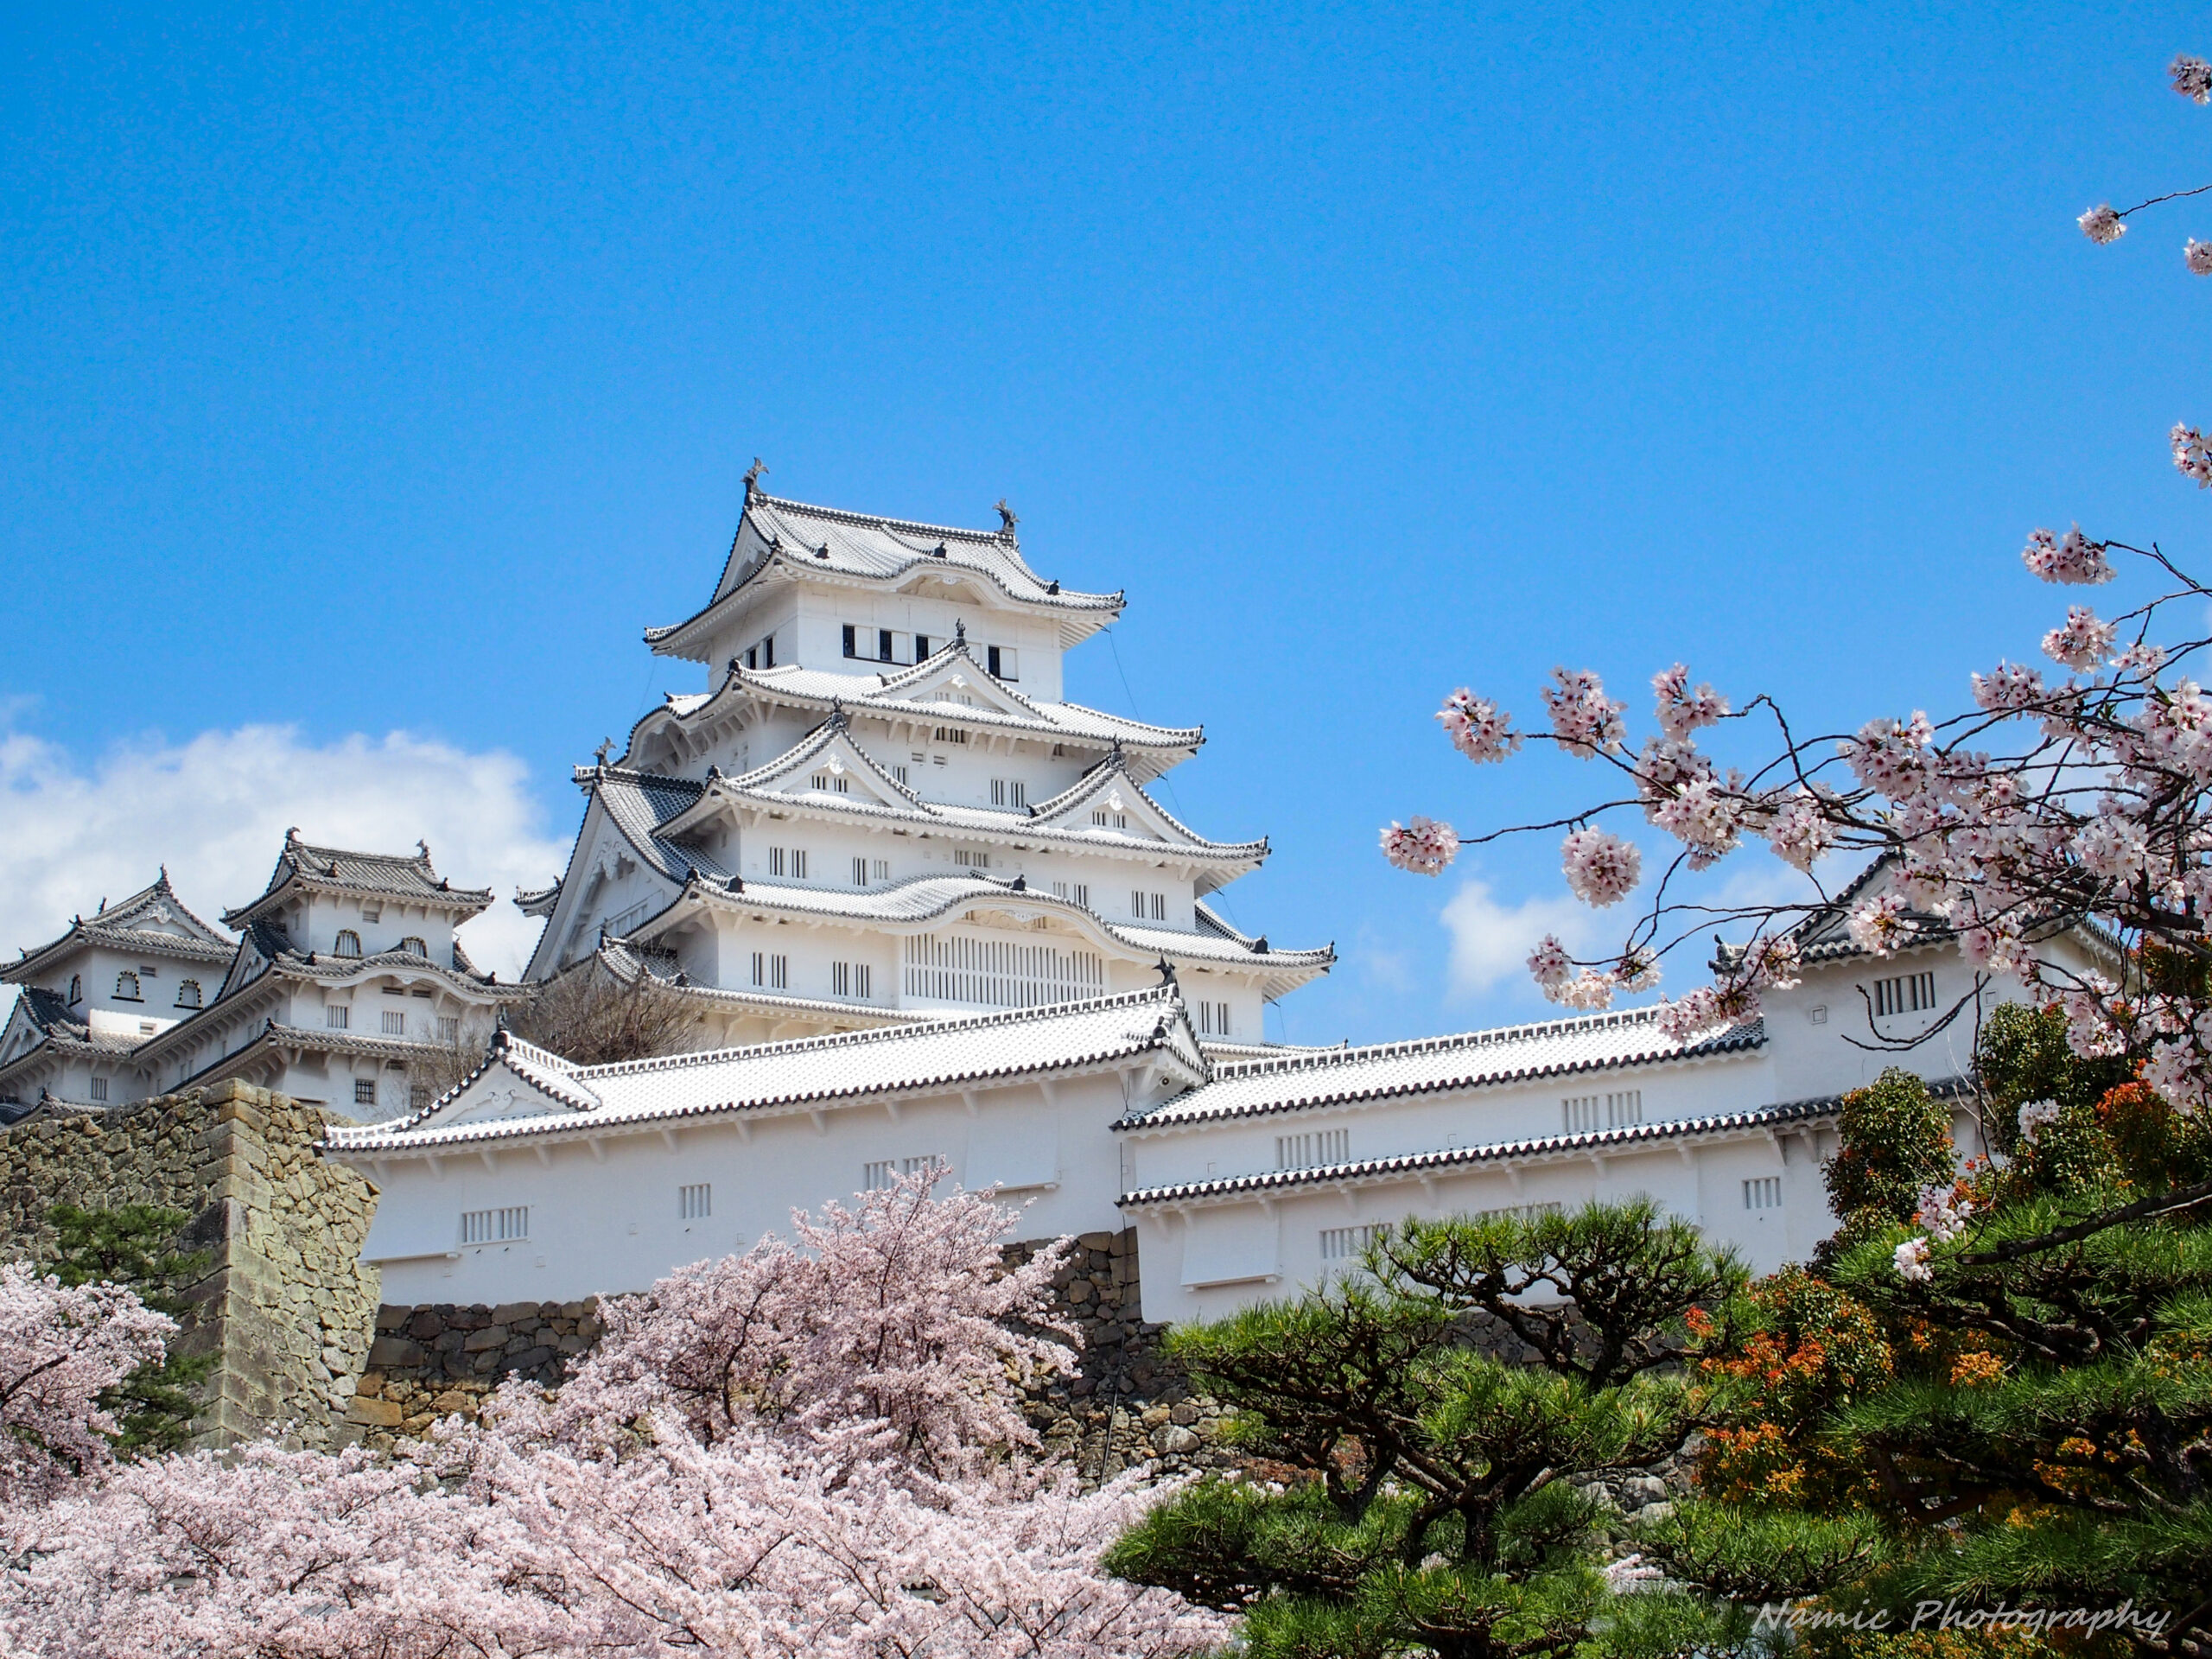 21年の姫路城の桜開花状況は 3日連続で姫路城の開花状況を調査 ほぼソロ活記